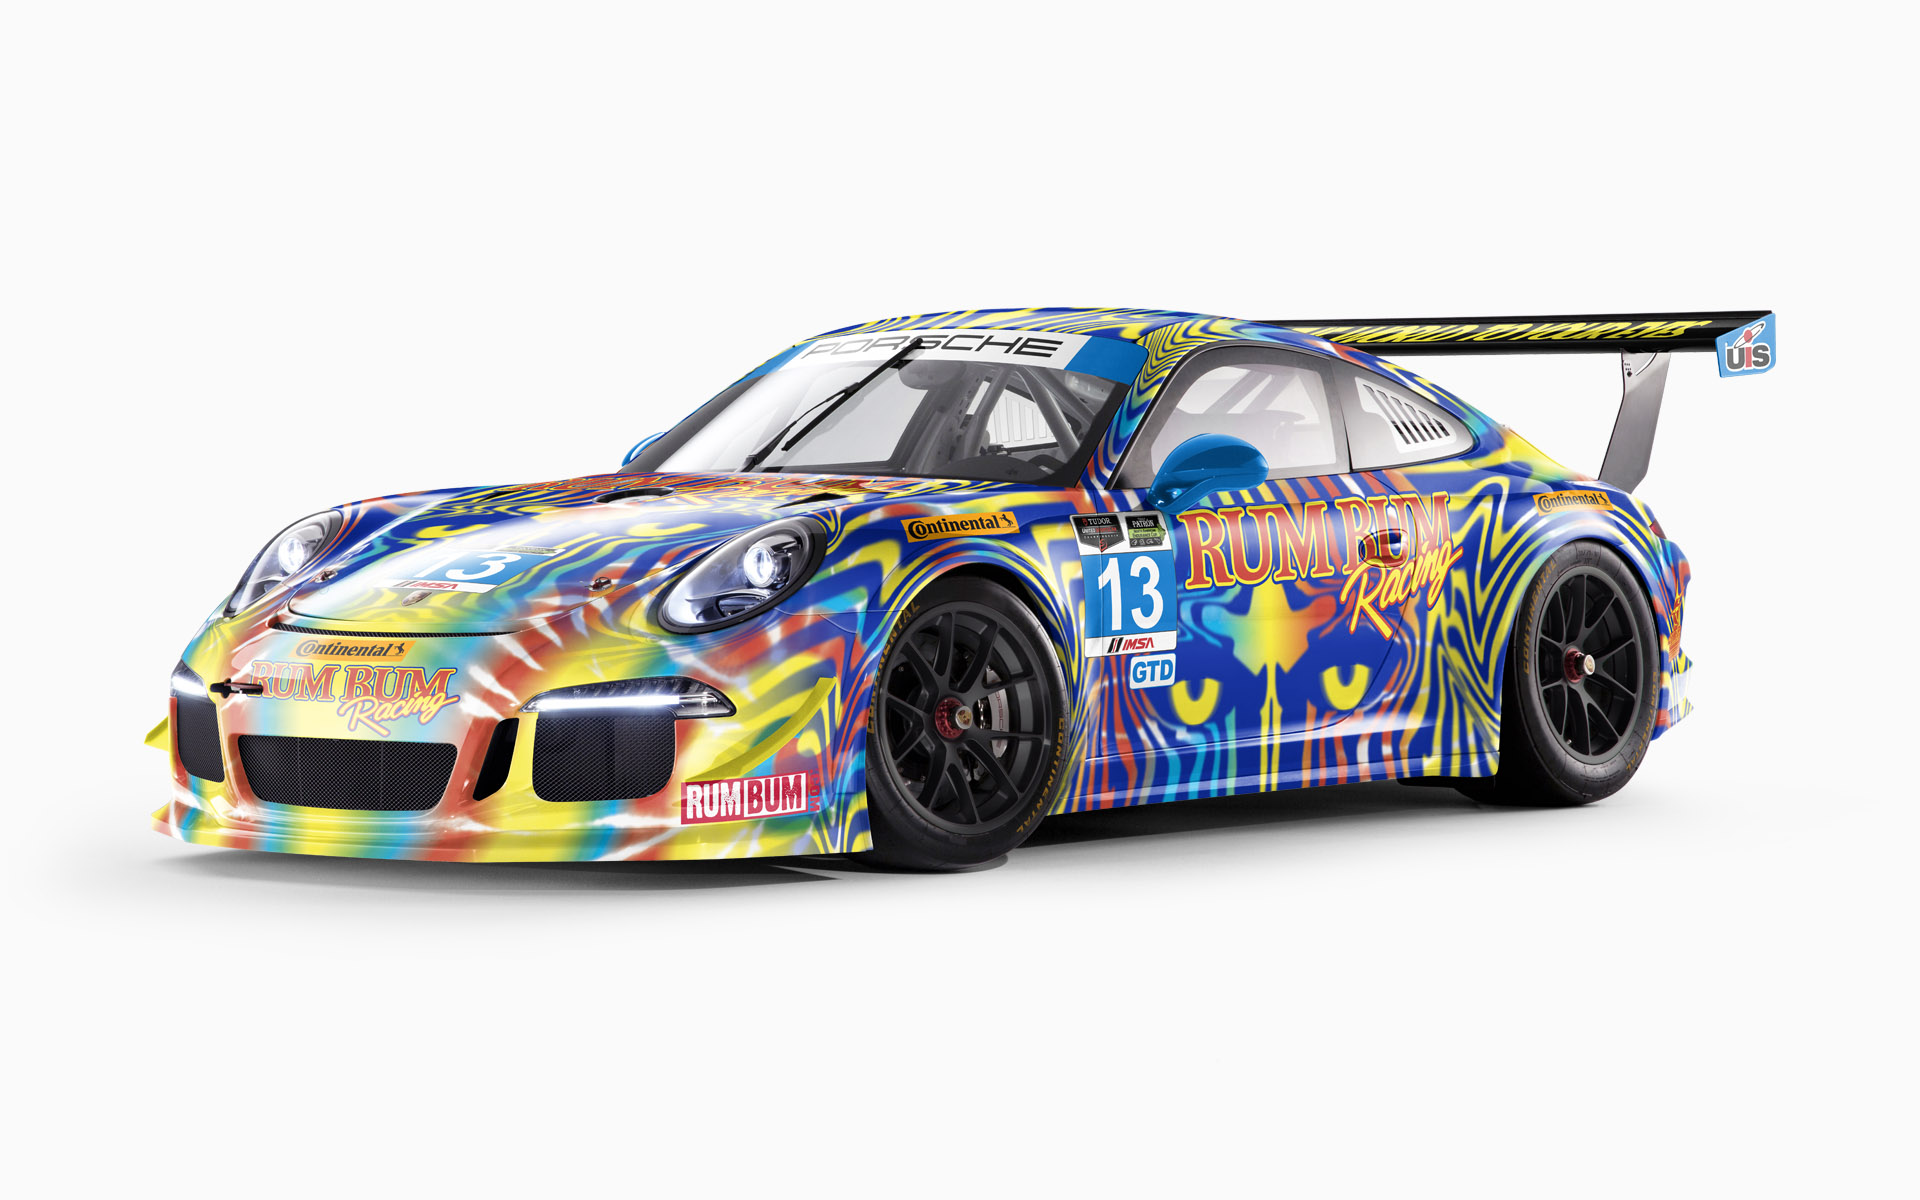 2014 Rum Bum Racing Porsche 911 GT America GTD Livery Visualization